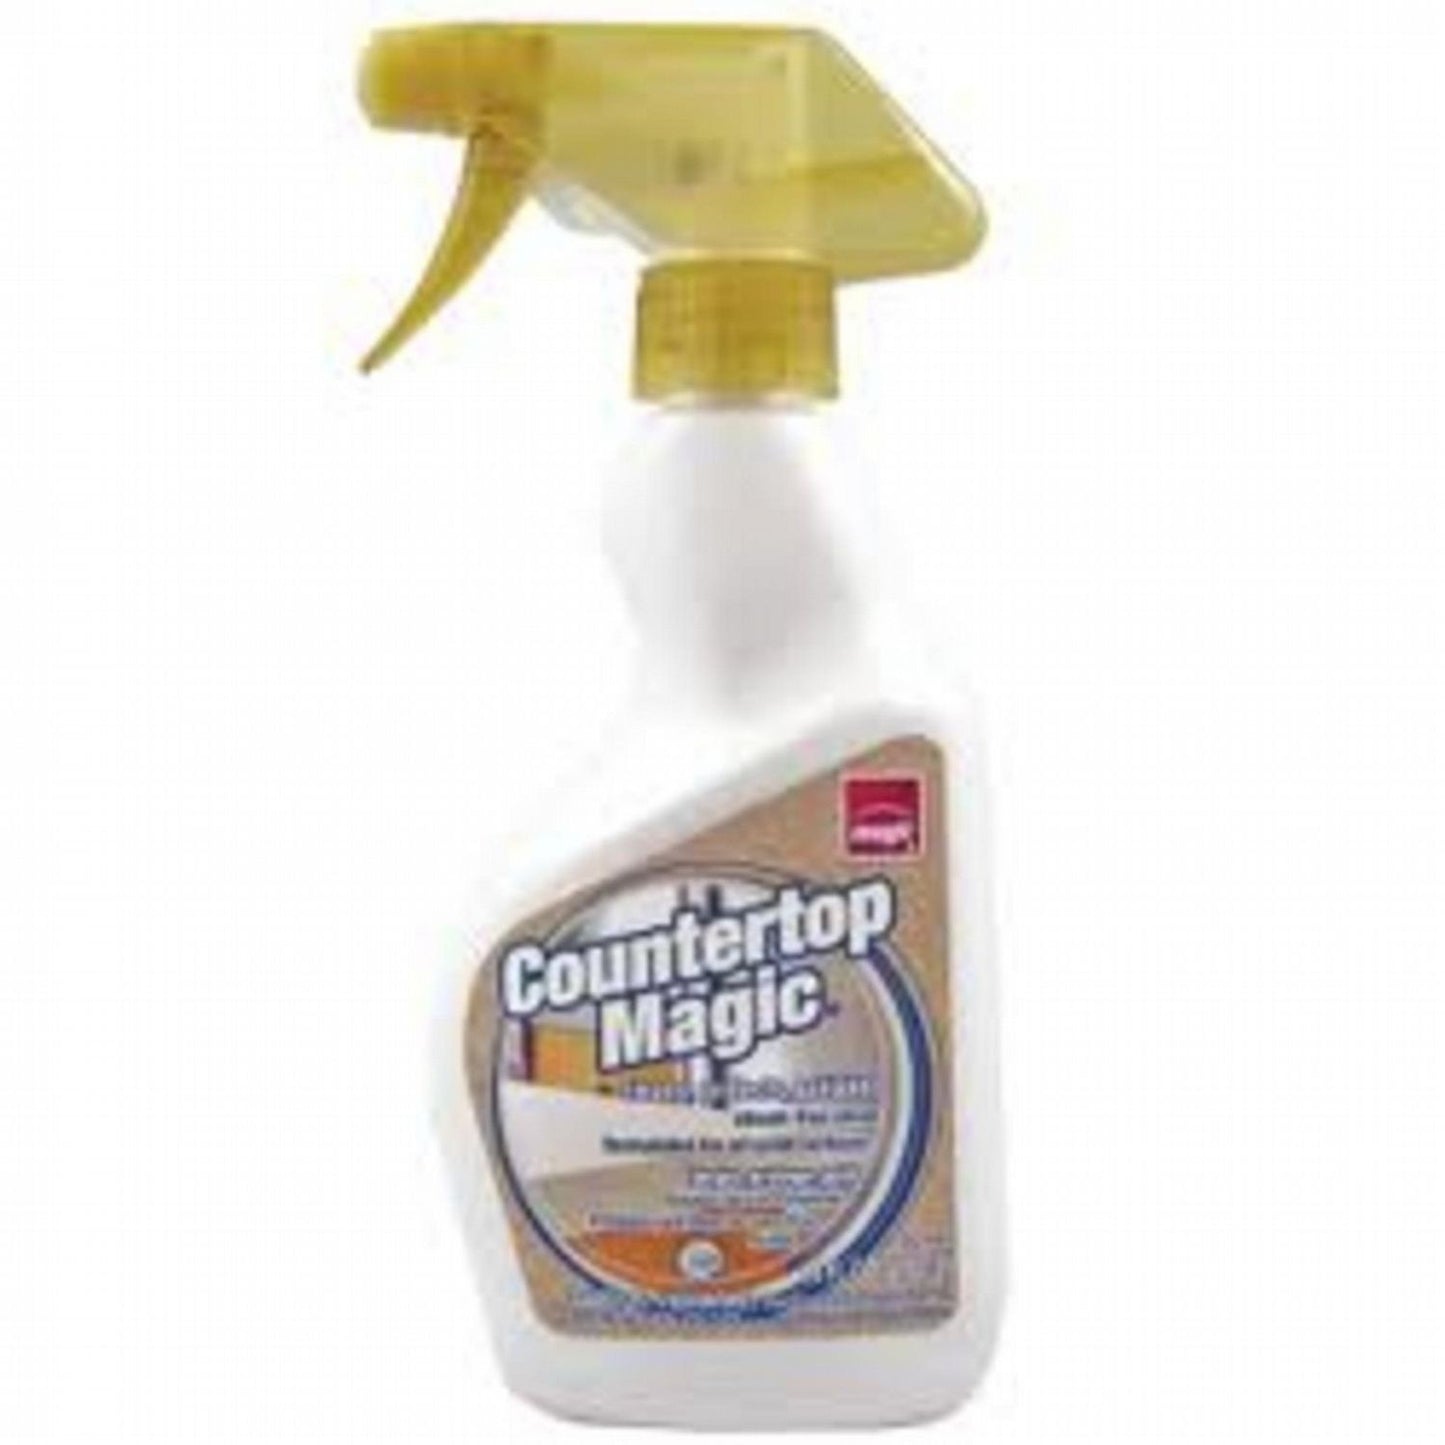 CounterTop Magic 14oz Trigger Spray Bottle Counter-Top